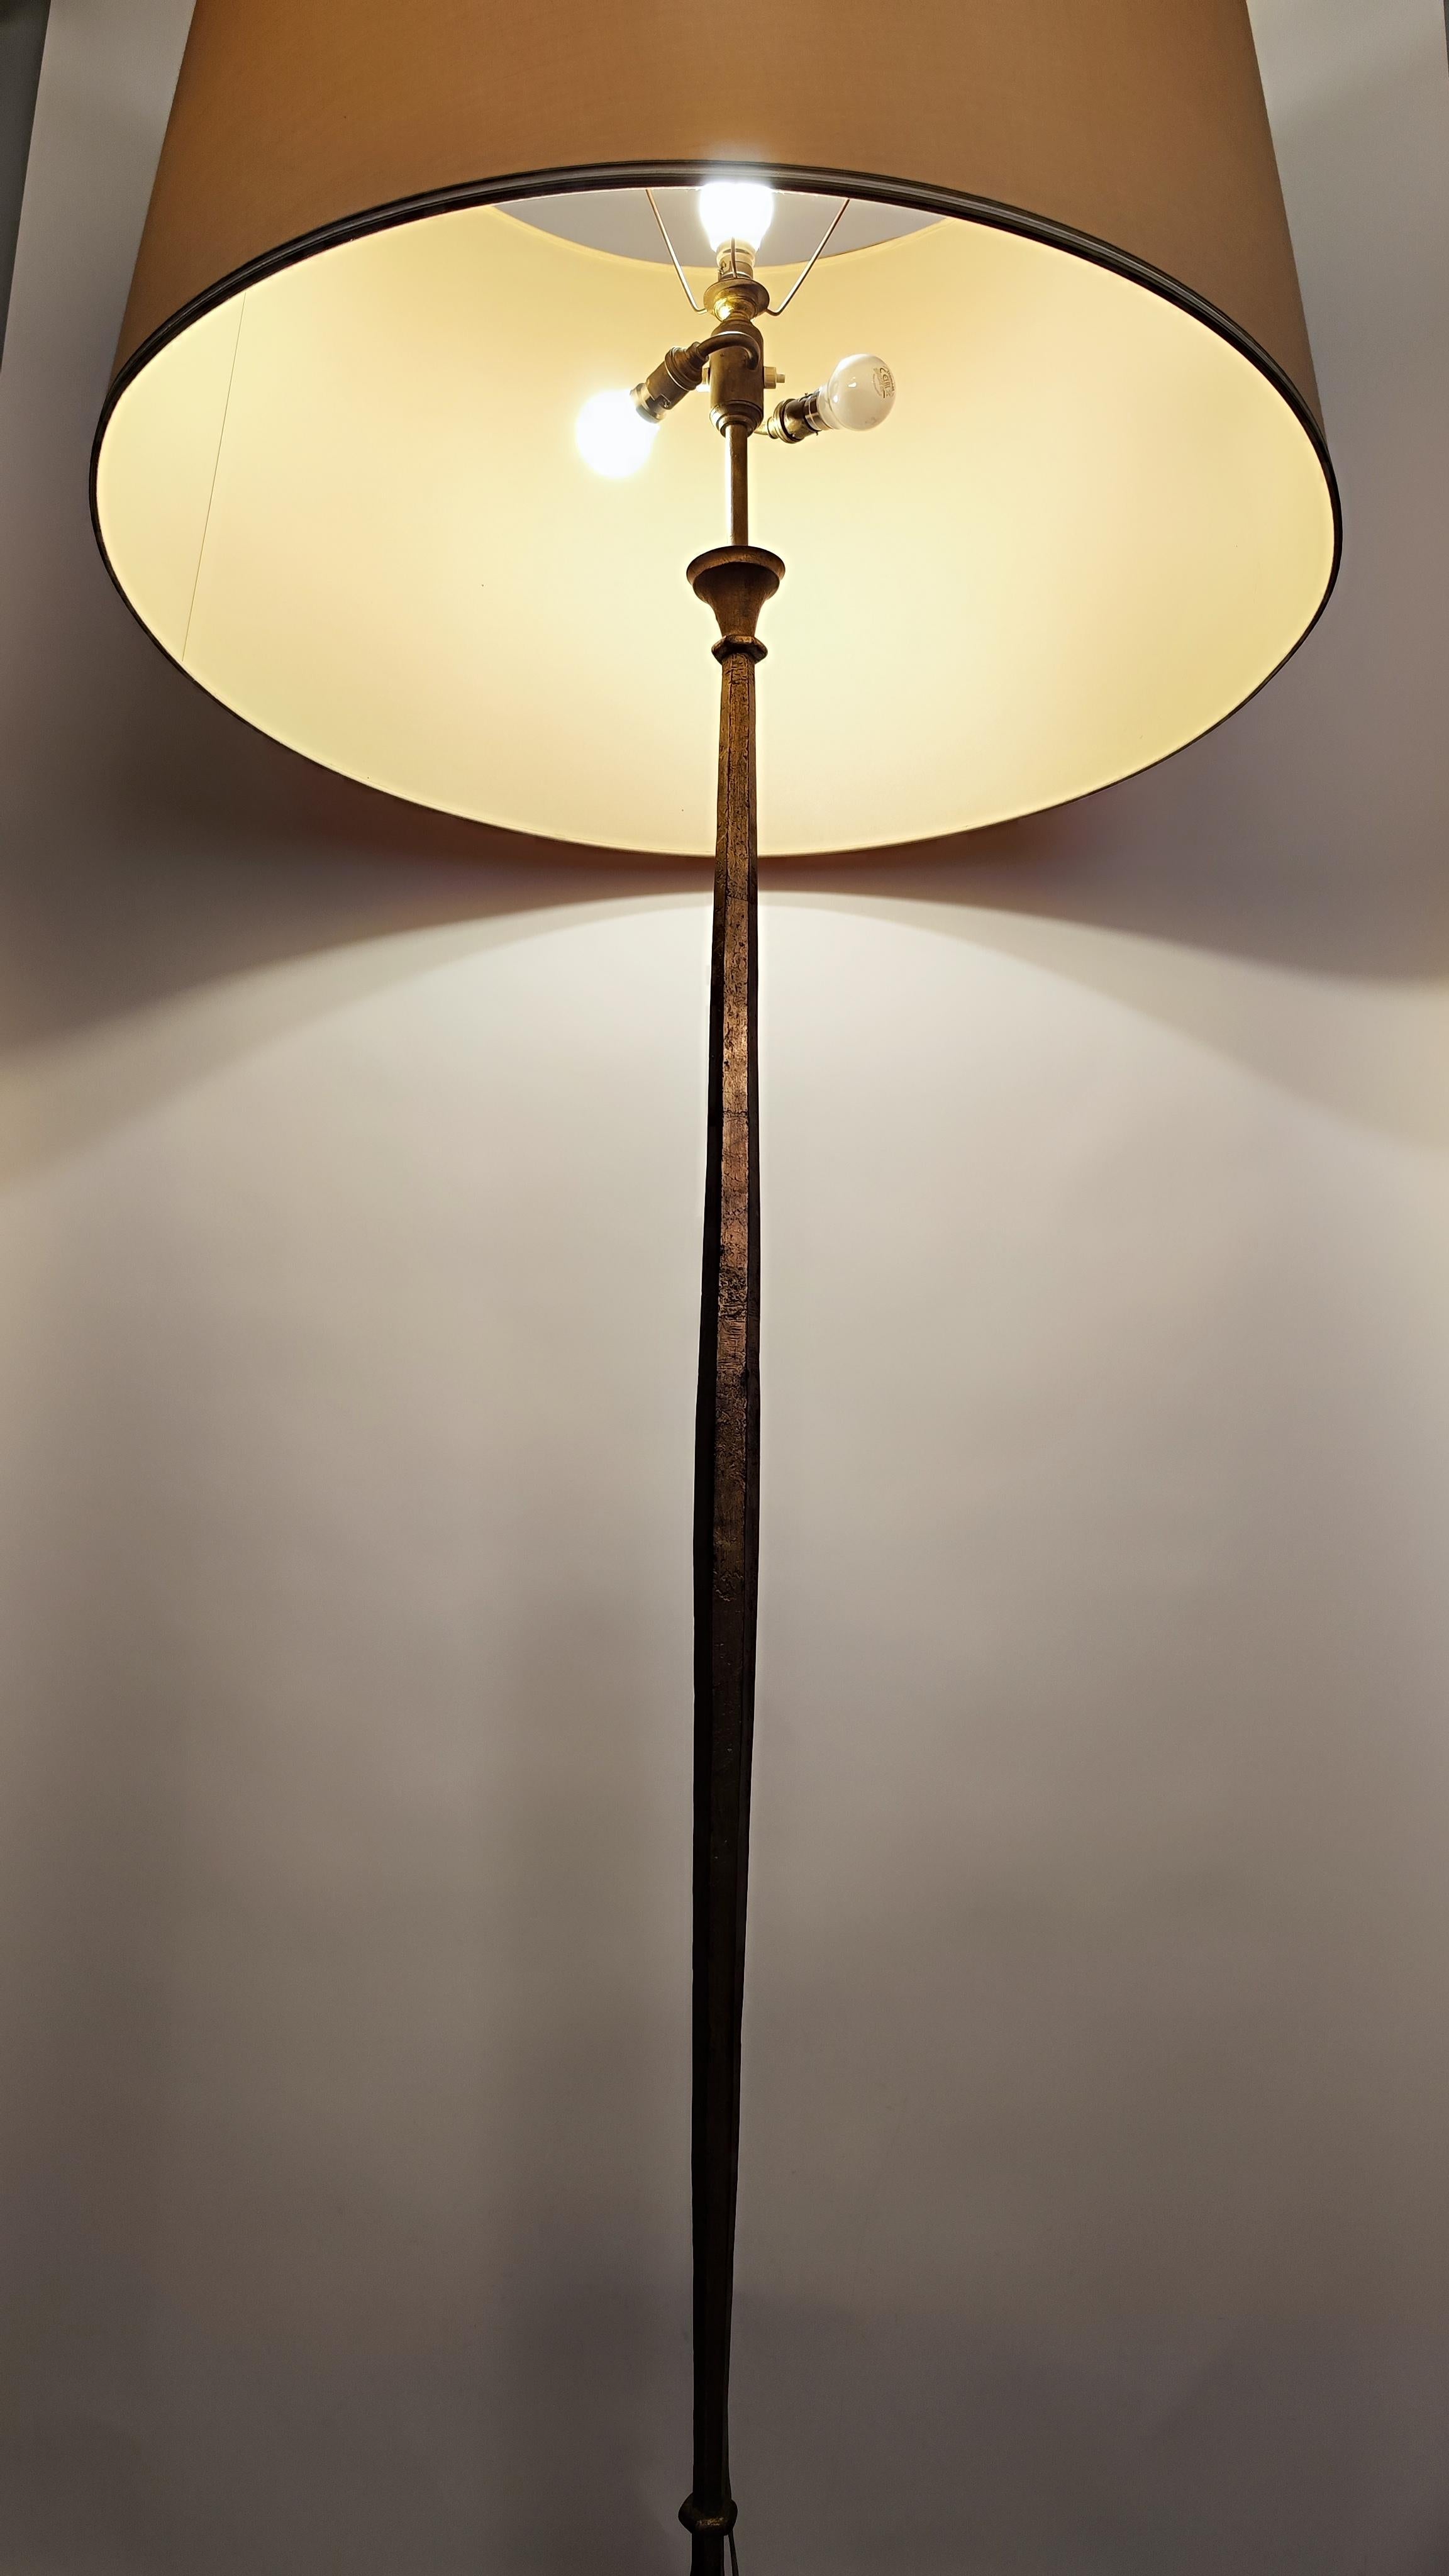 Lampadaire en fer doré du milieu du siècle, conçu et fabriqué par la Maison Ramsay, Paris, France, vers 1950-1960. 
.
Les lignes sont très nettes et précises ; la lampe est en fer battu doré.
.
La tige centrale de la lampe a une forme